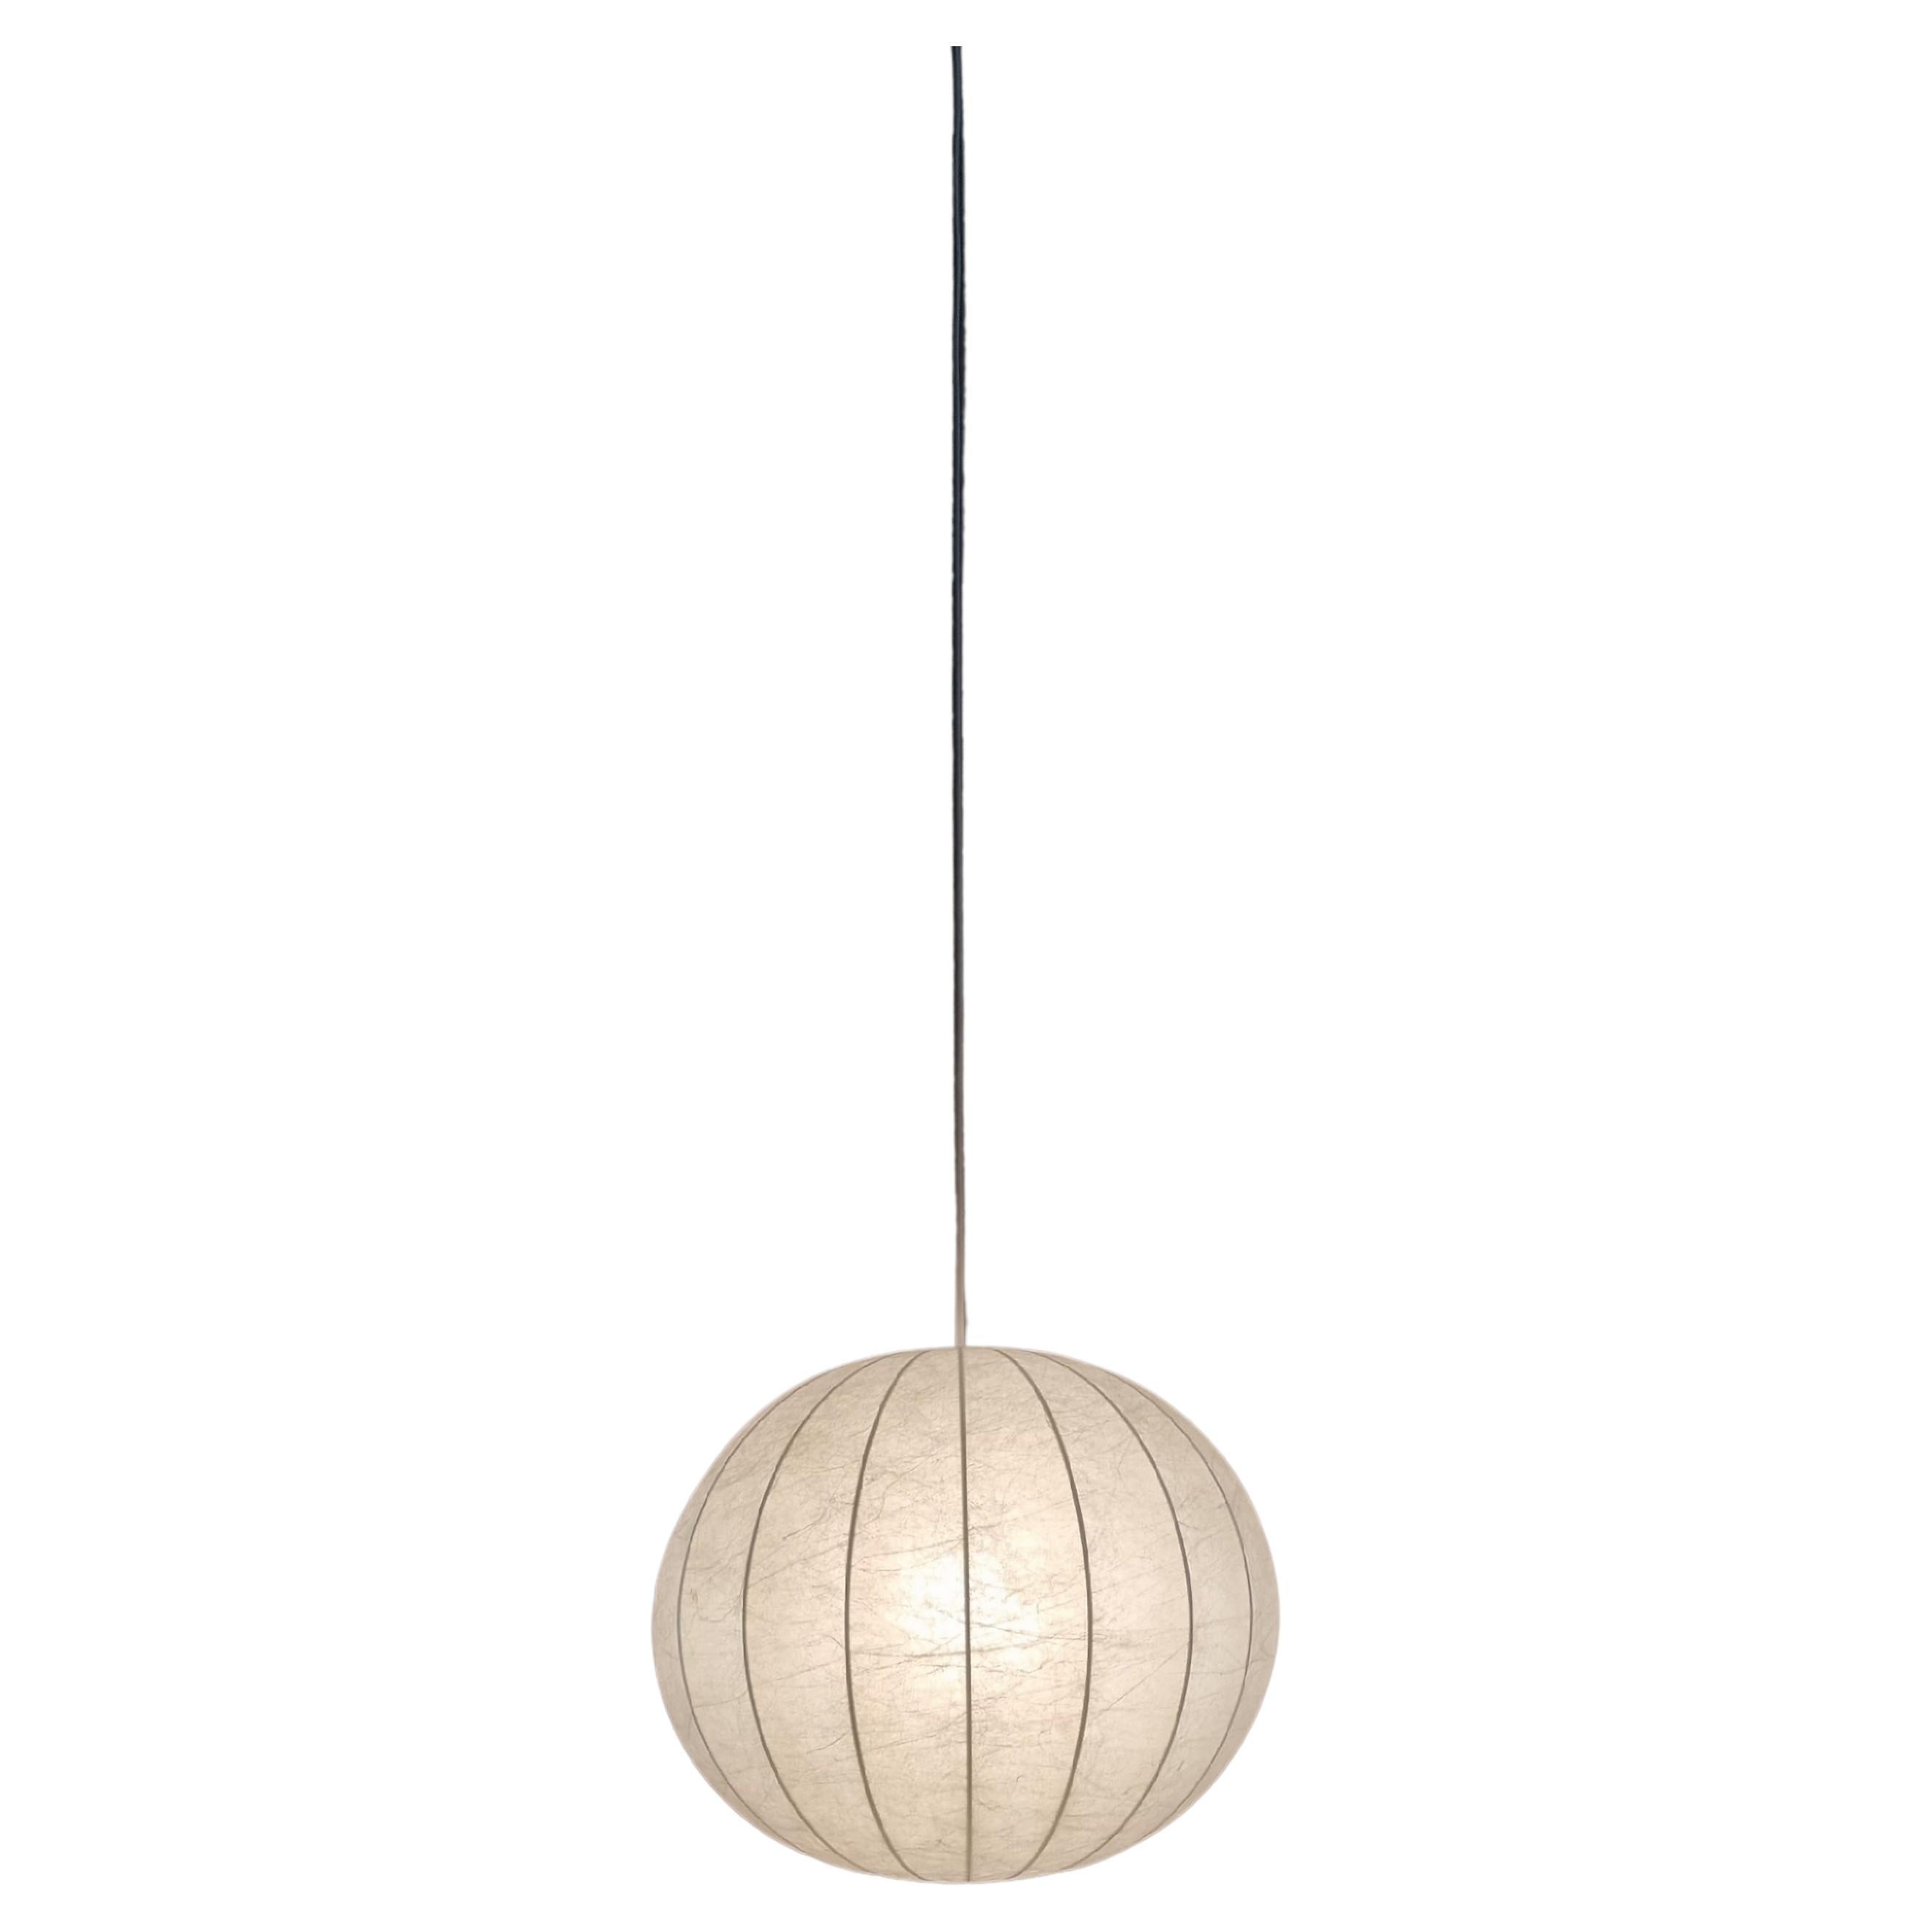 Cocoon Suspension Lamp, Italian Manufacture, 1960s